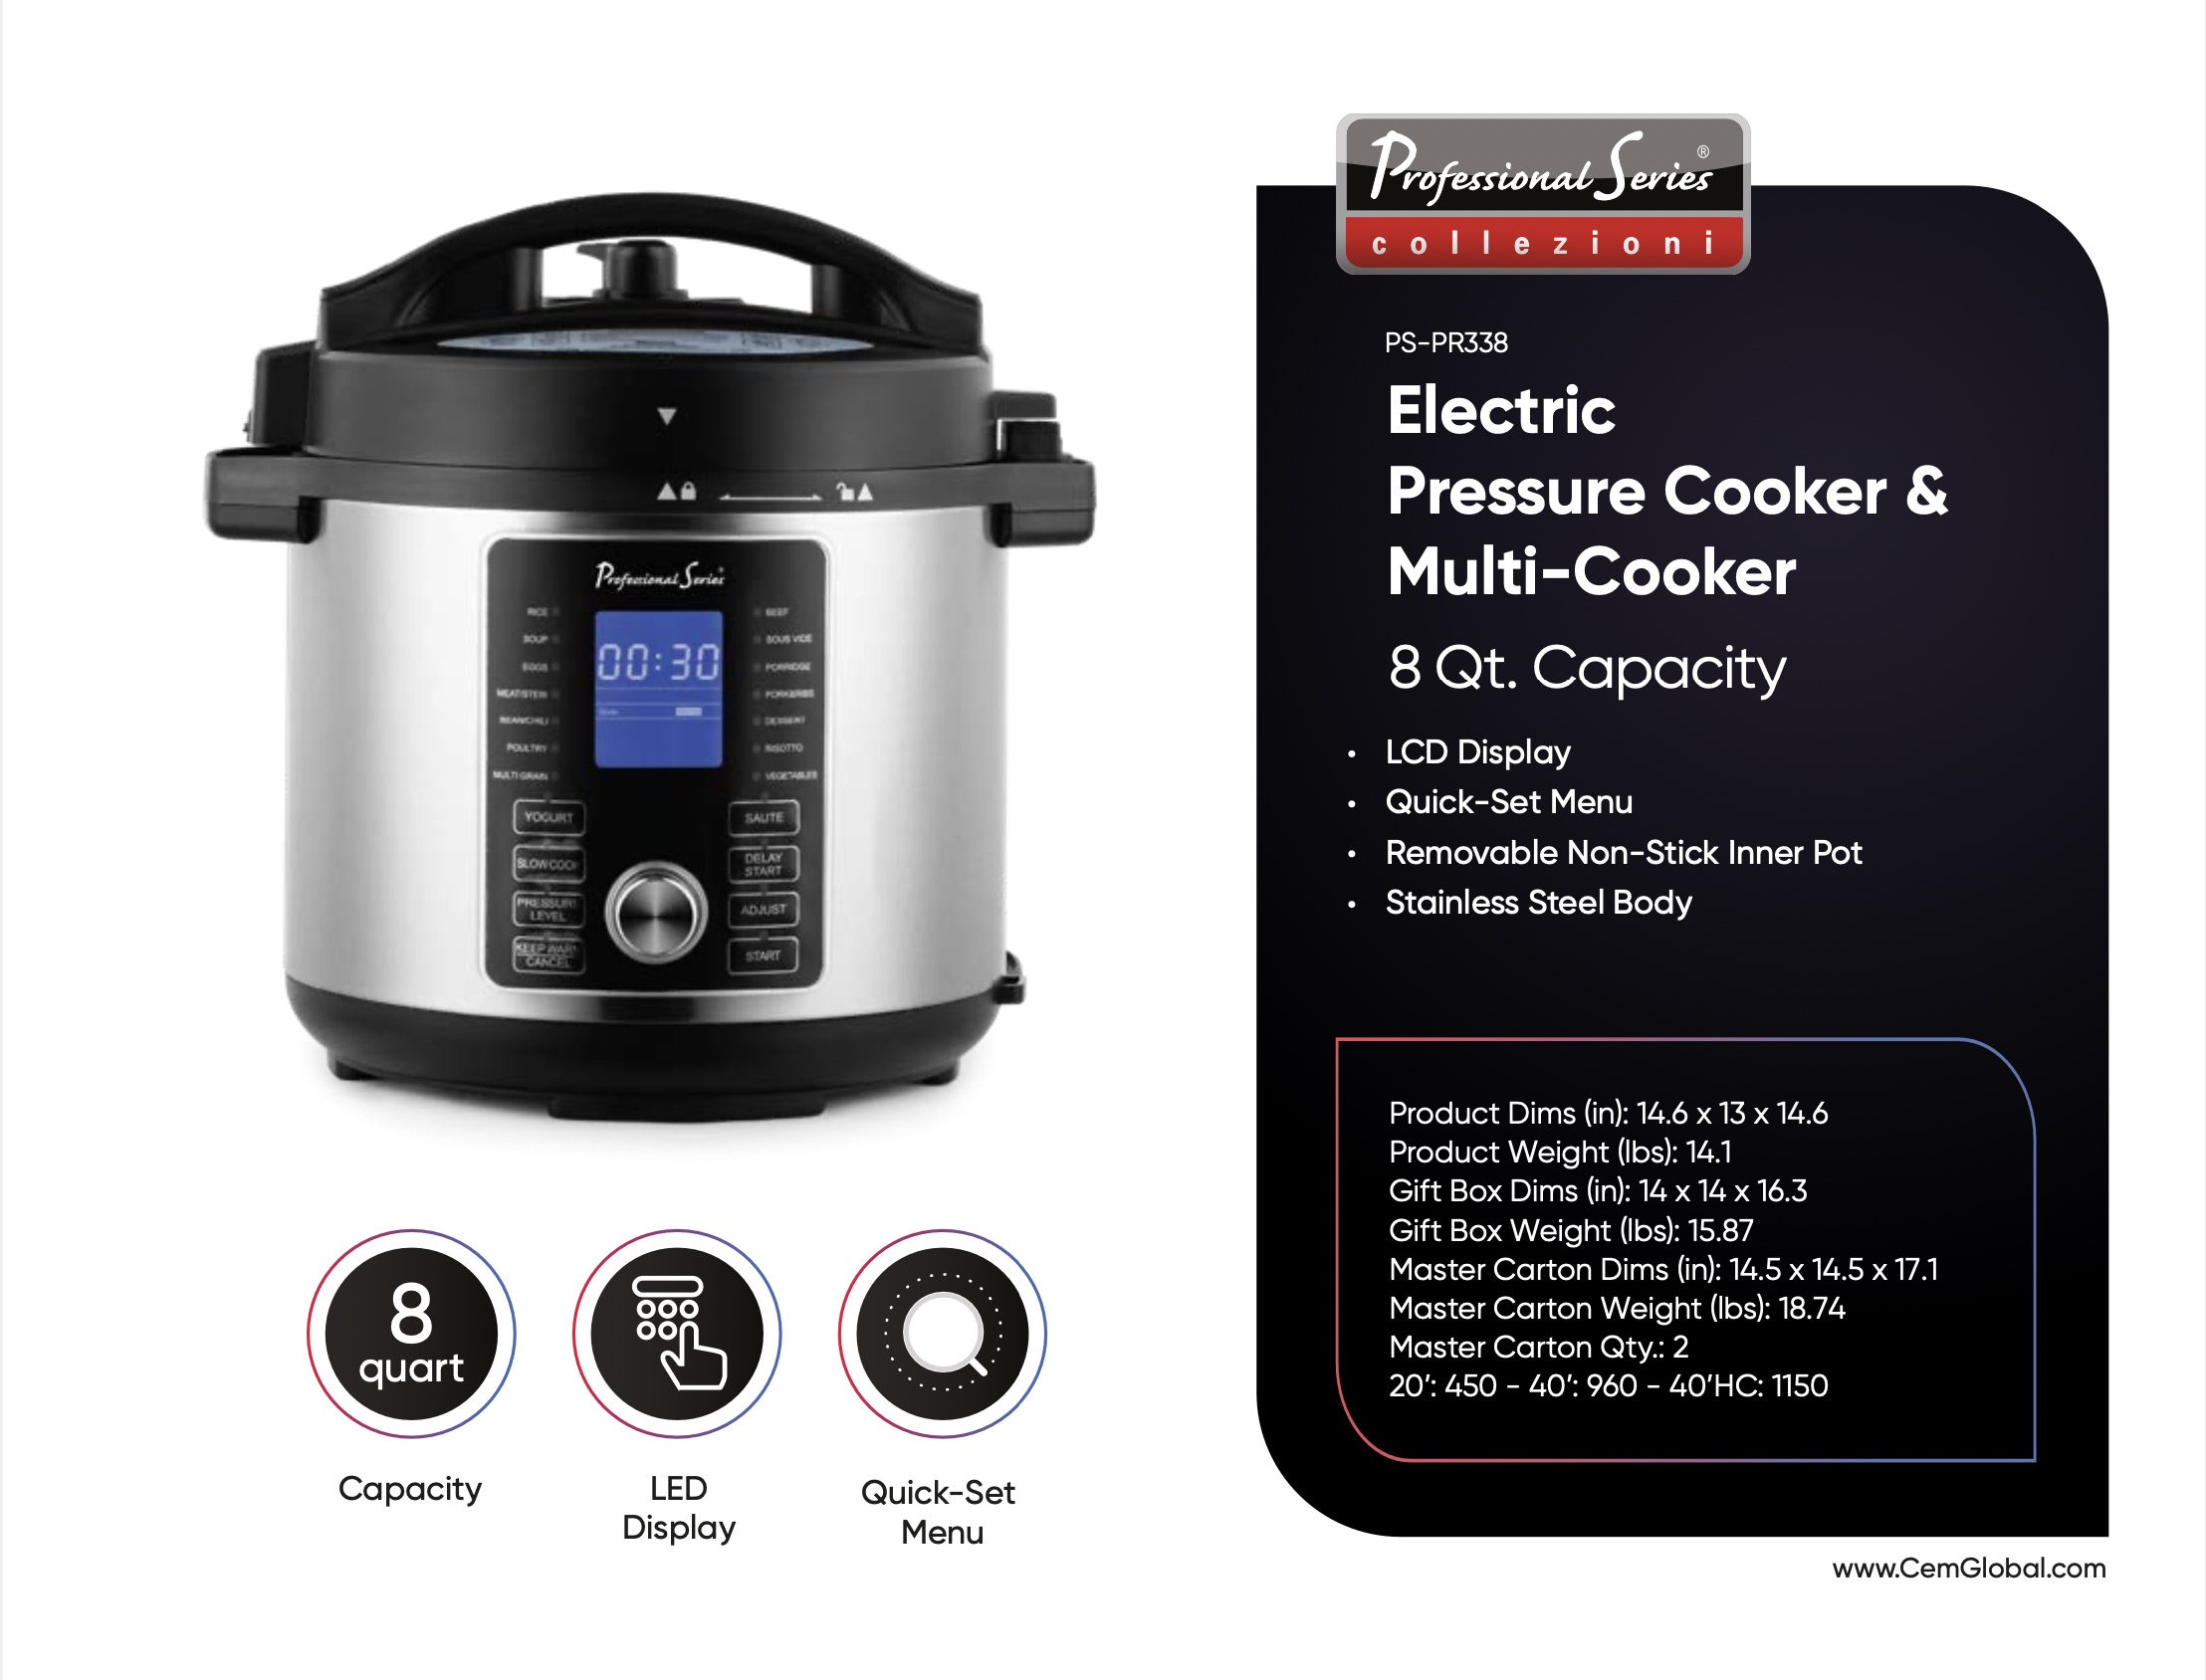 Electric Pressure Cooker & Multi-Cooker 8 Qt